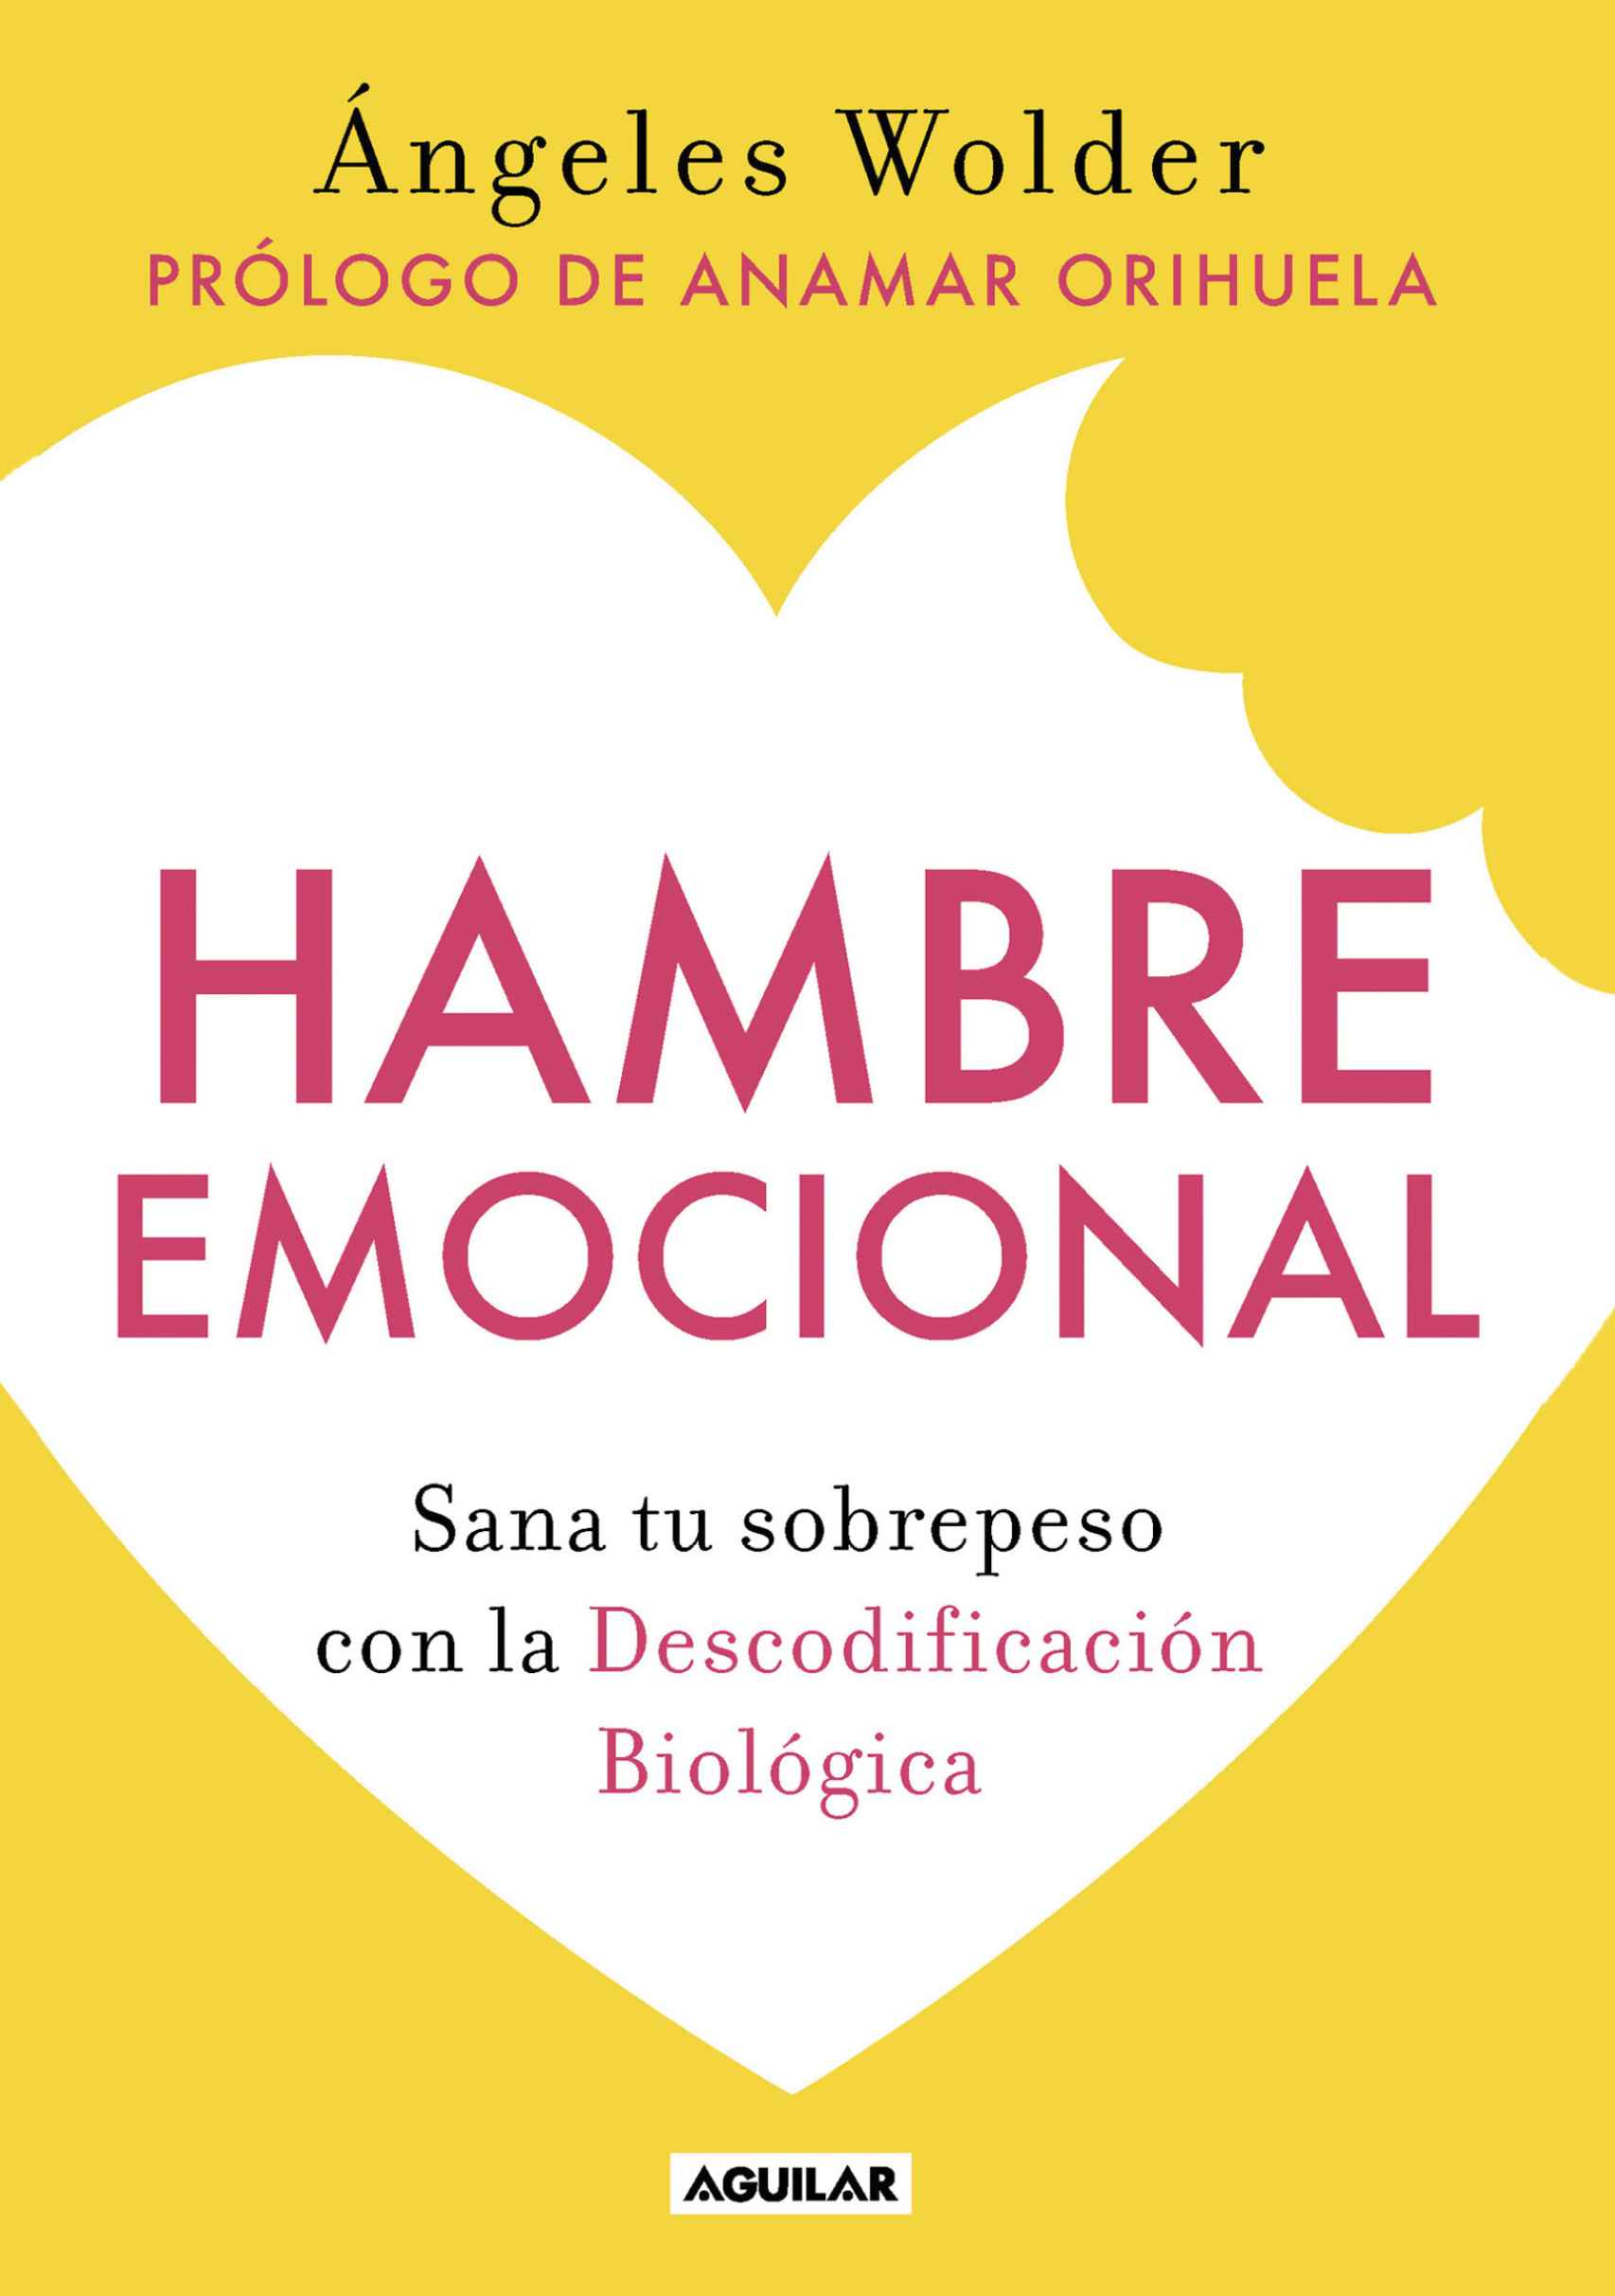 Portada del libro 'Hambre Emocional: Sana tu Sobrepeso con la Descodificación Biológica', de Ángeles Walder